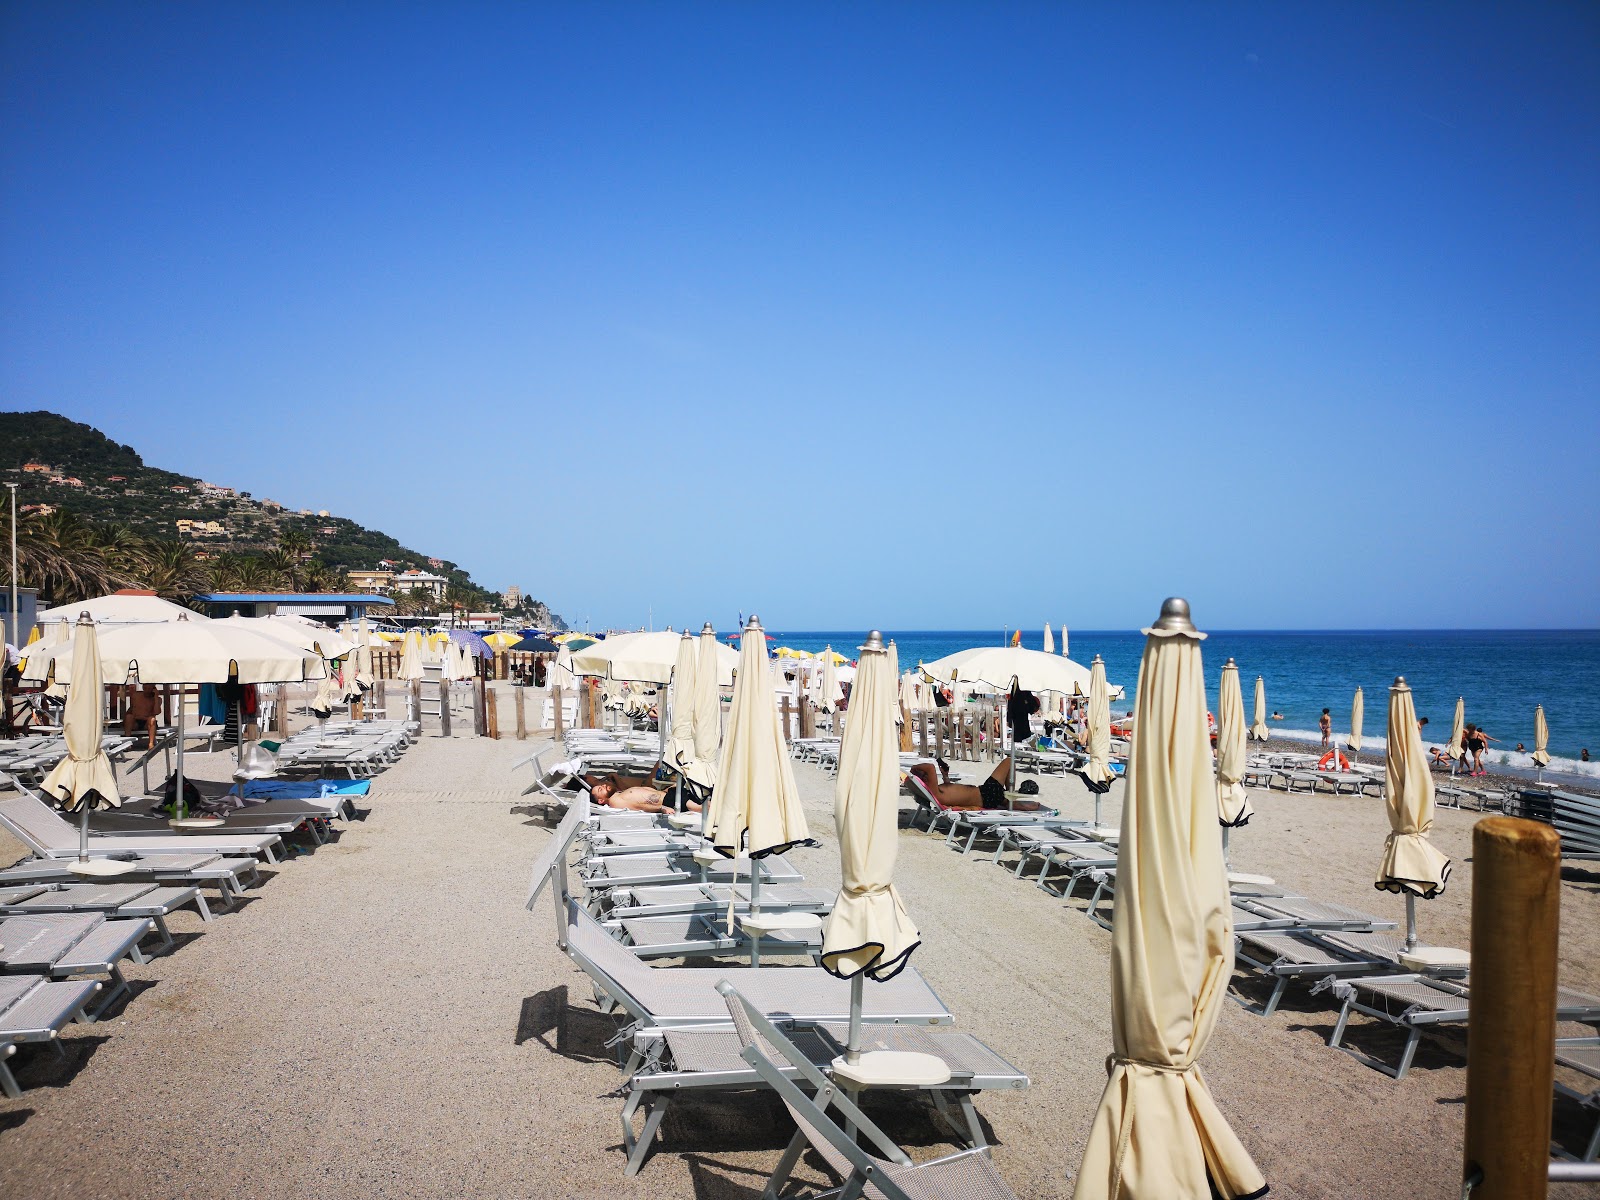 Foto de Spiaggia libera Attrezzata - lugar popular entre los conocedores del relax